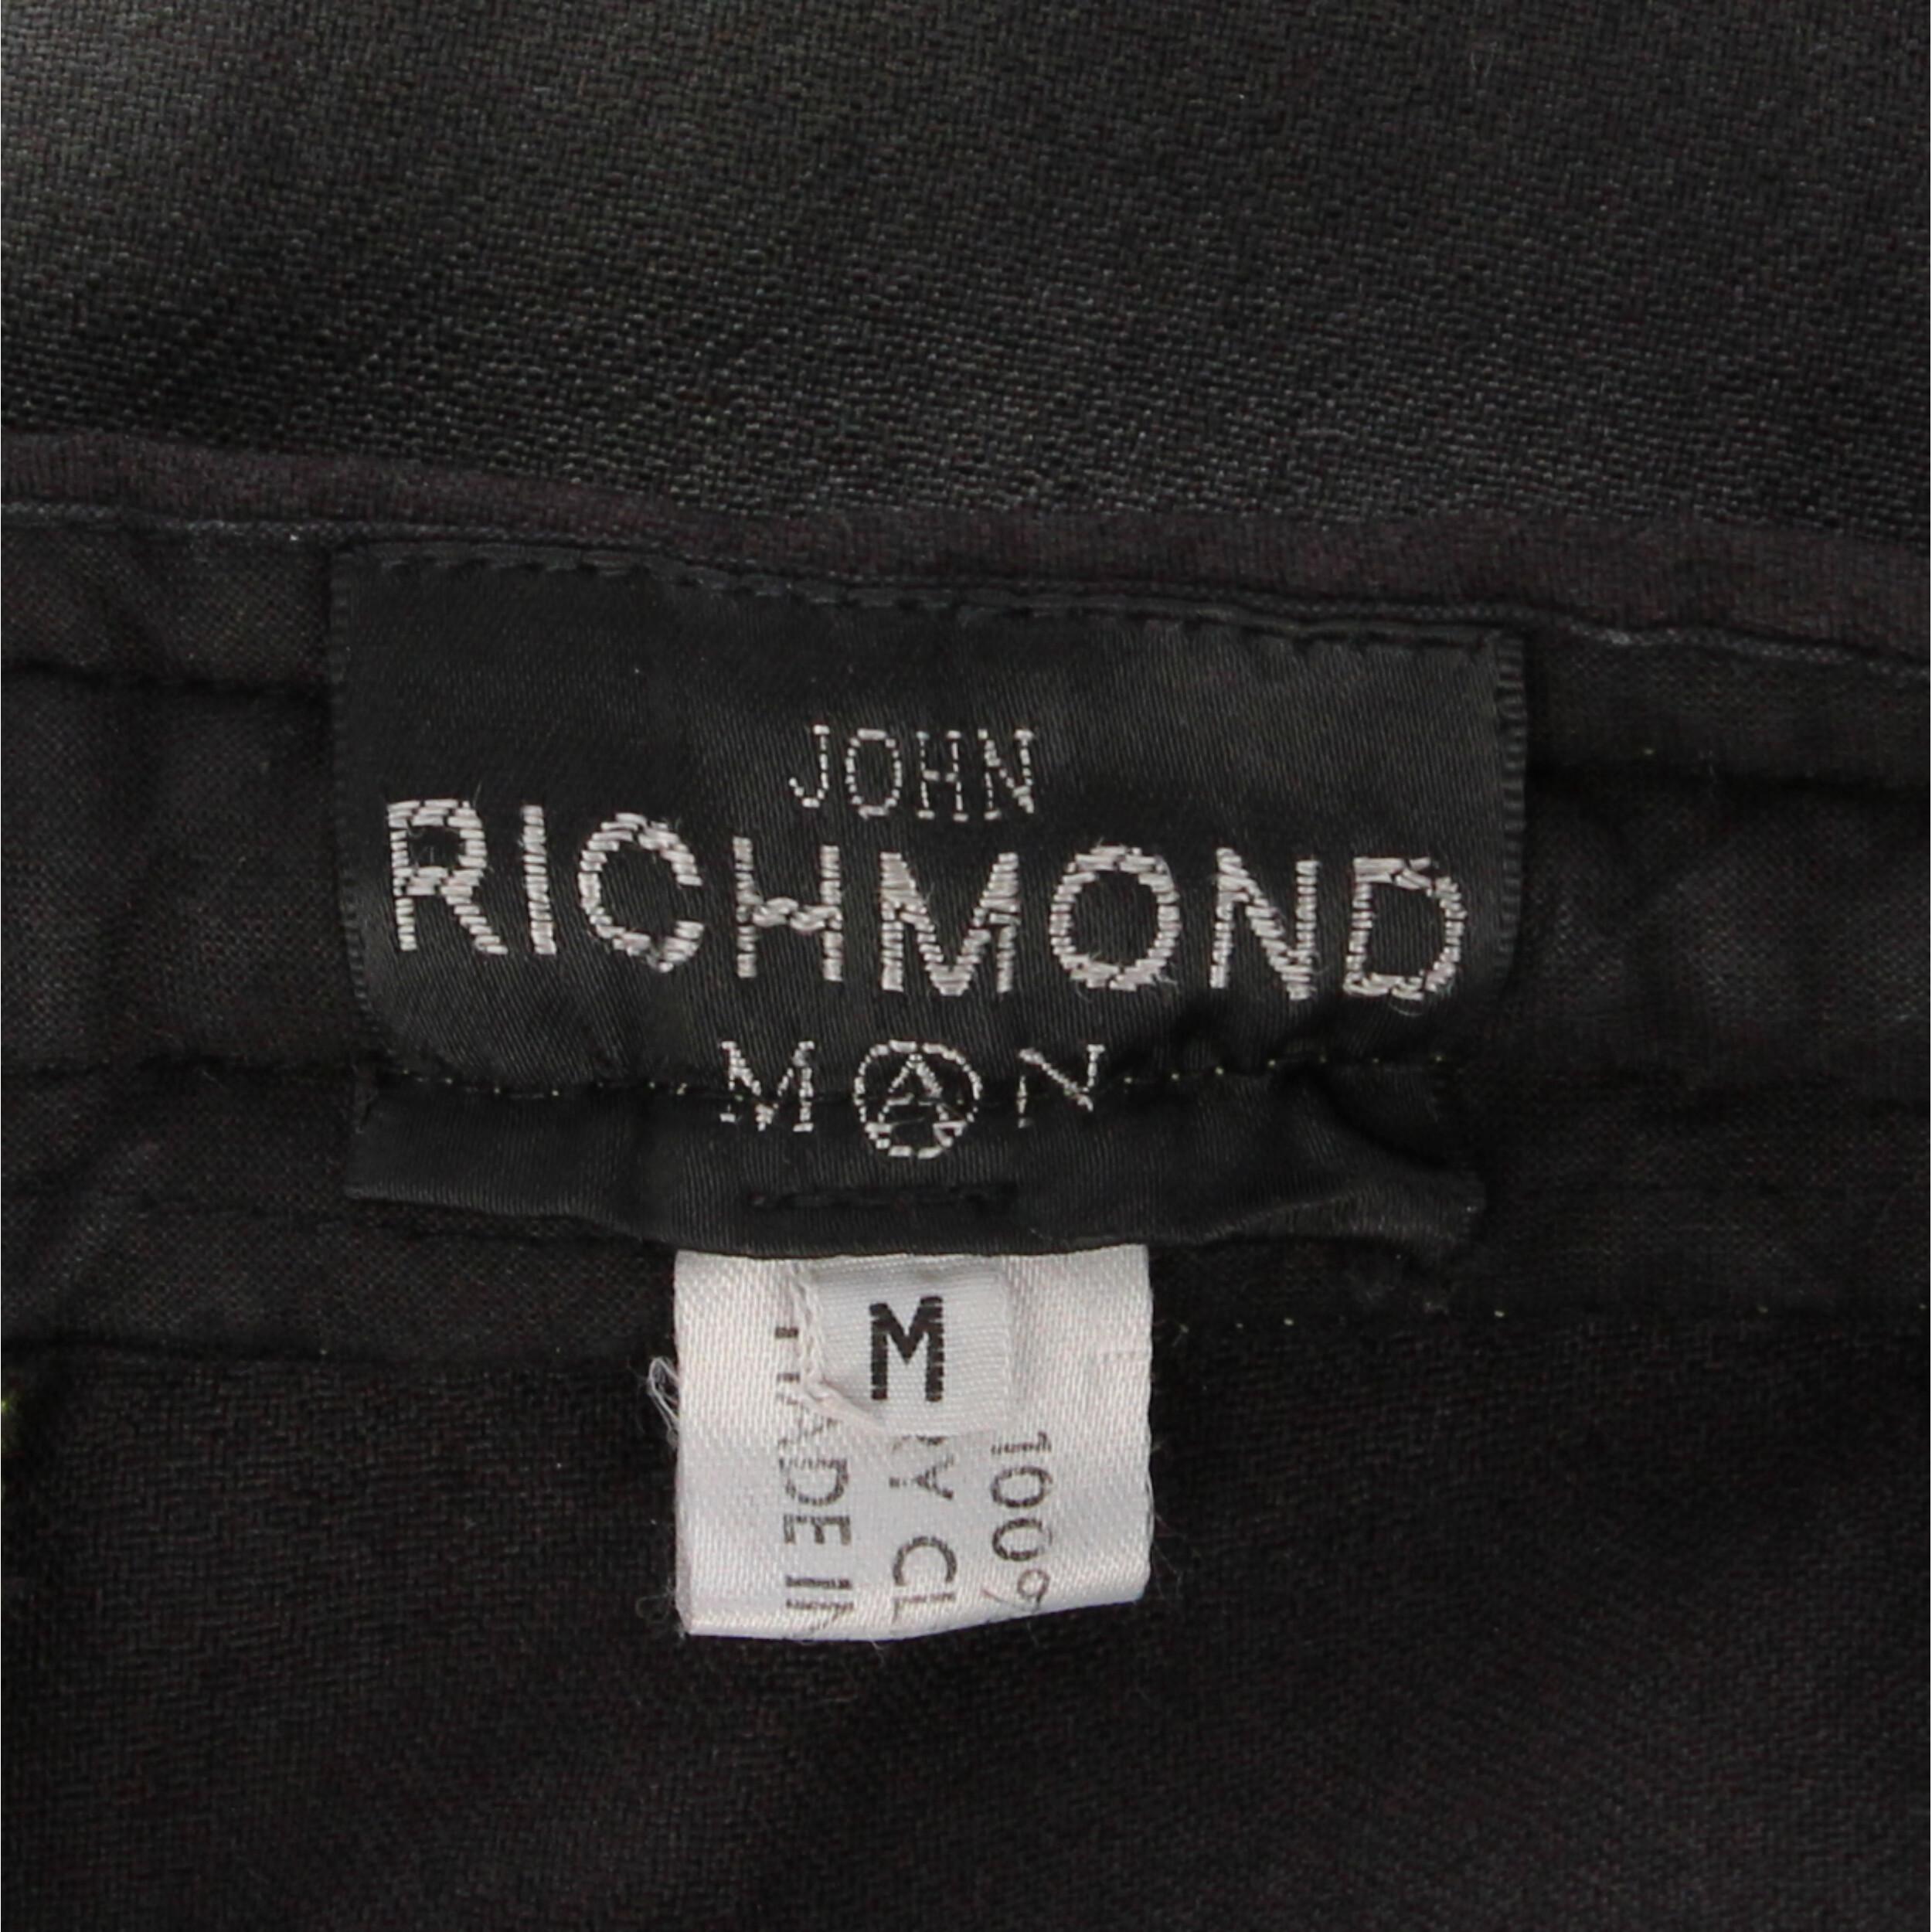 2010s John Richmond Tie-dye Trousers 3